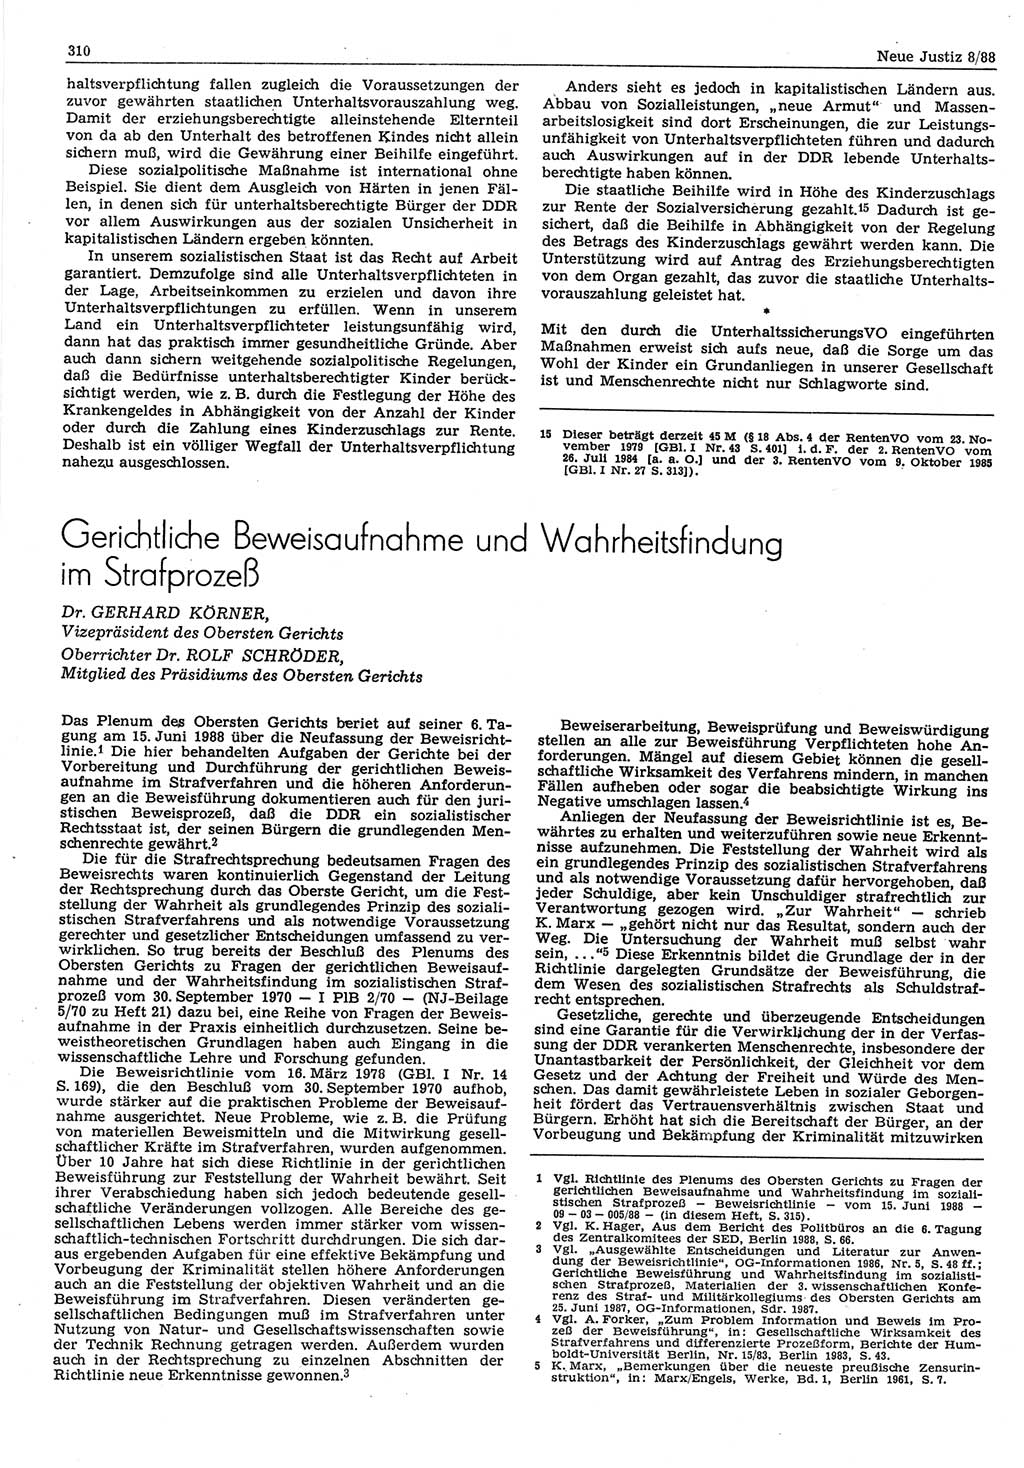 Neue Justiz (NJ), Zeitschrift für sozialistisches Recht und Gesetzlichkeit [Deutsche Demokratische Republik (DDR)], 42. Jahrgang 1988, Seite 310 (NJ DDR 1988, S. 310)